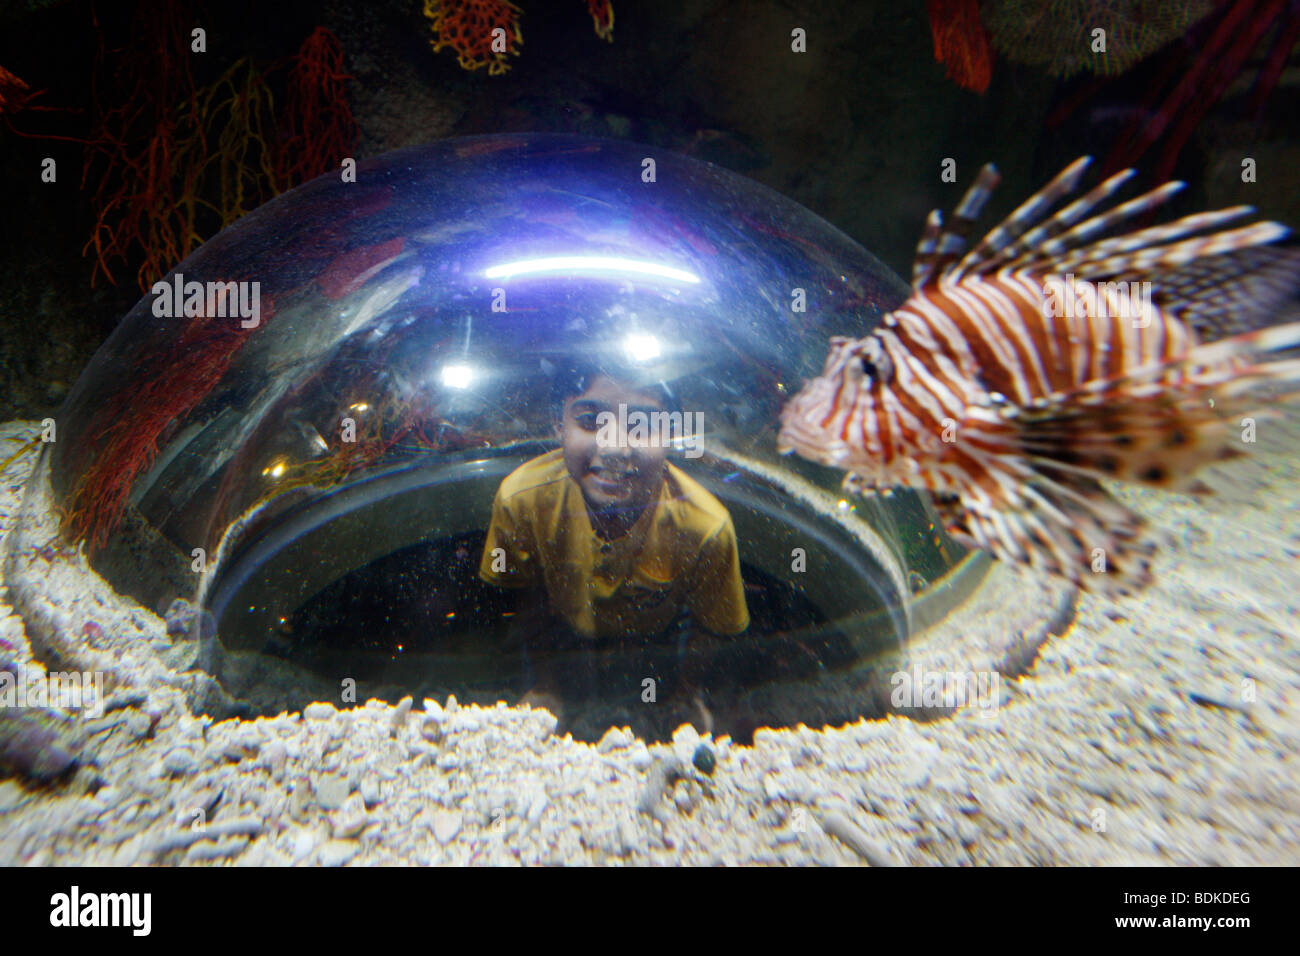 Dubai Aquarium e lo Zoo di subacquea, parte di Dubai Mall nel centro cittadino di Dubai, la parte nuova della città, Dubai, Emirati Arabi Uniti. Foto Stock